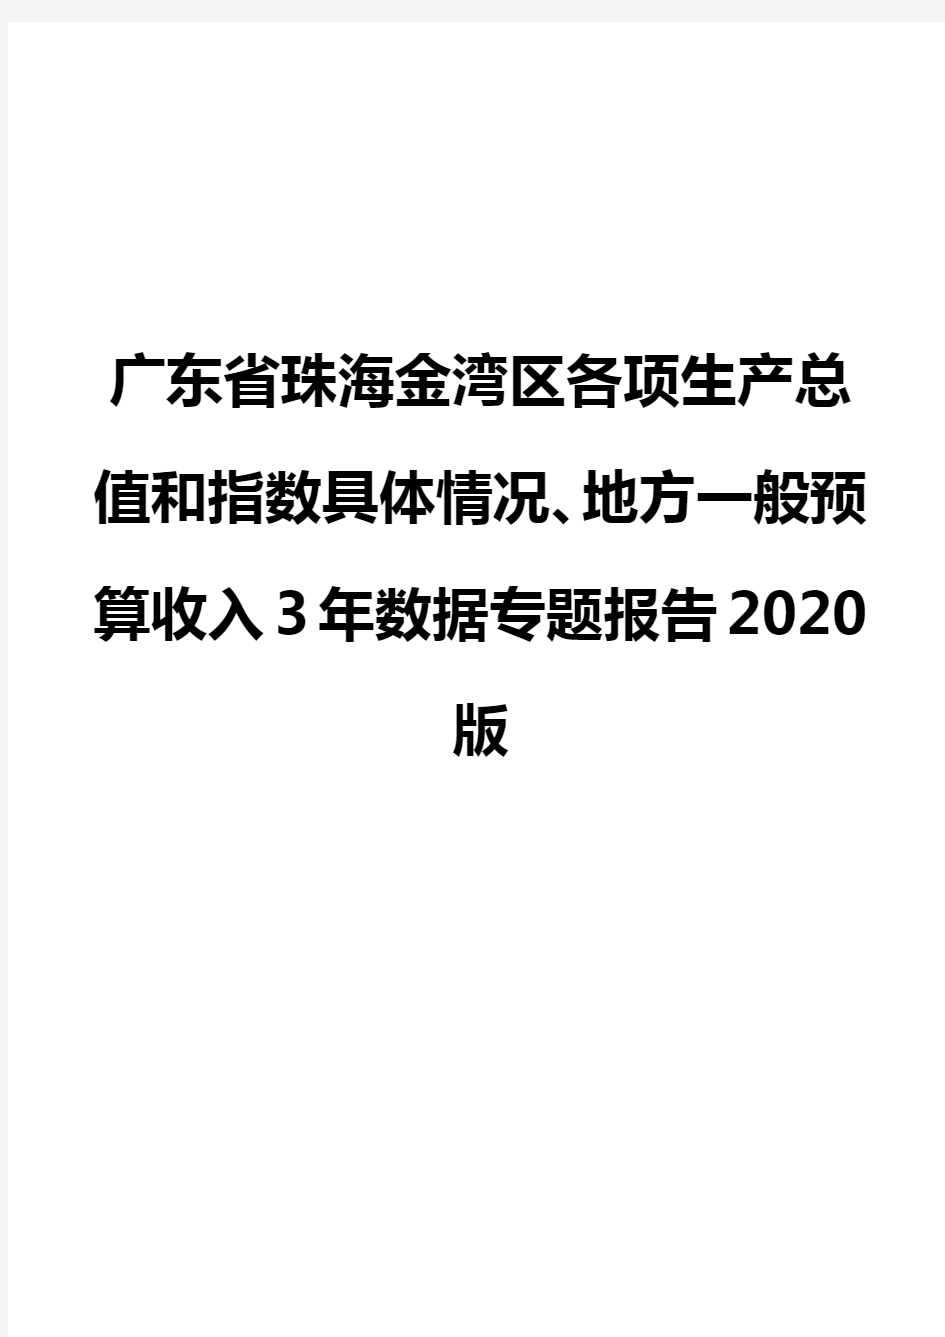 广东省珠海金湾区各项生产总值和指数具体情况、地方一般预算收入3年数据专题报告2020版